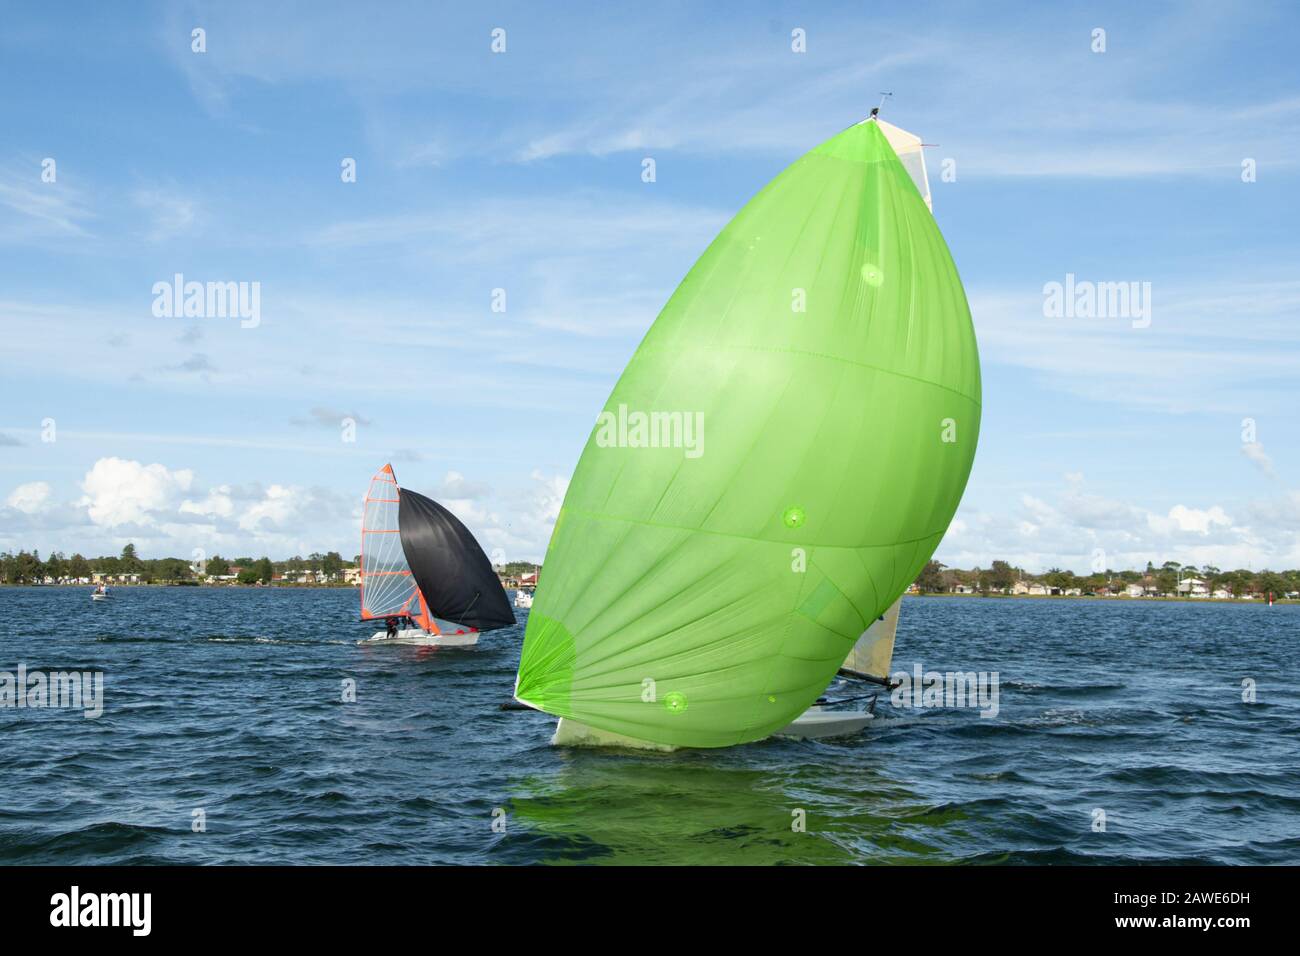 I bambini che navigano su una piccola barca a vela, in primo piano, con uno spinnaker verde lime completamente dispiegato, seguiti da un concorrente. Foto Stock